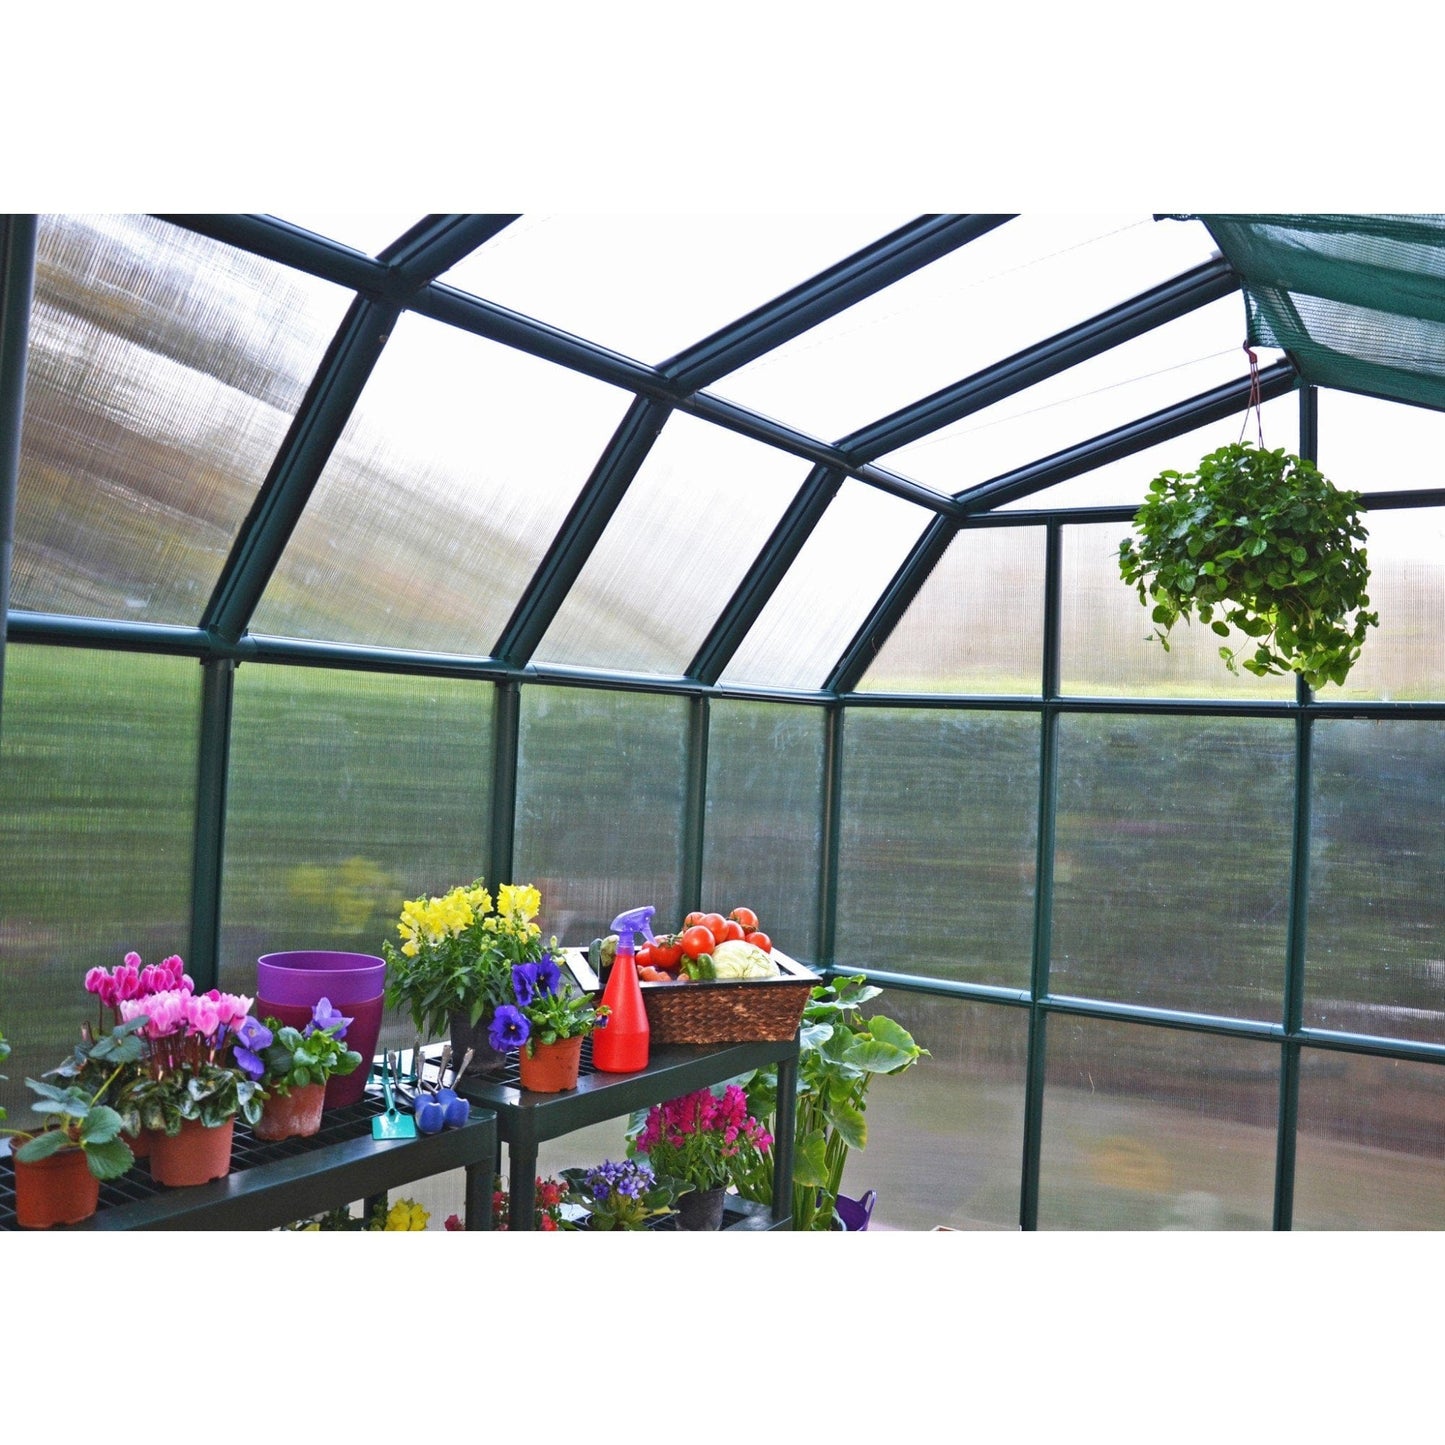 Palram - Canopia Grand Gardener Greenhouse - Twin Wall - mygreenhousestore.com